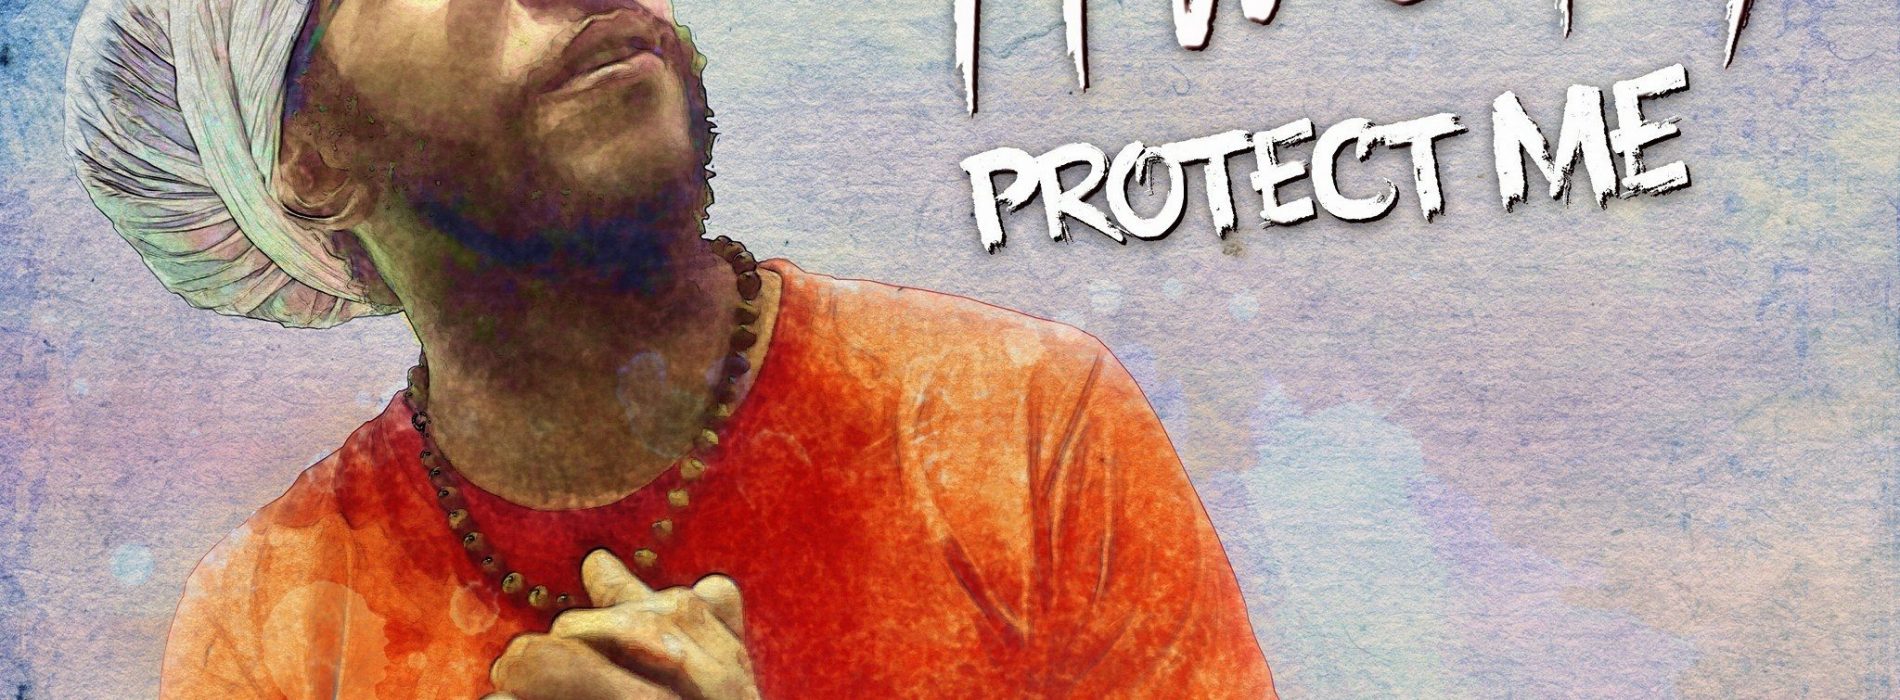 TIWONY- Protect me – Novembre 2017